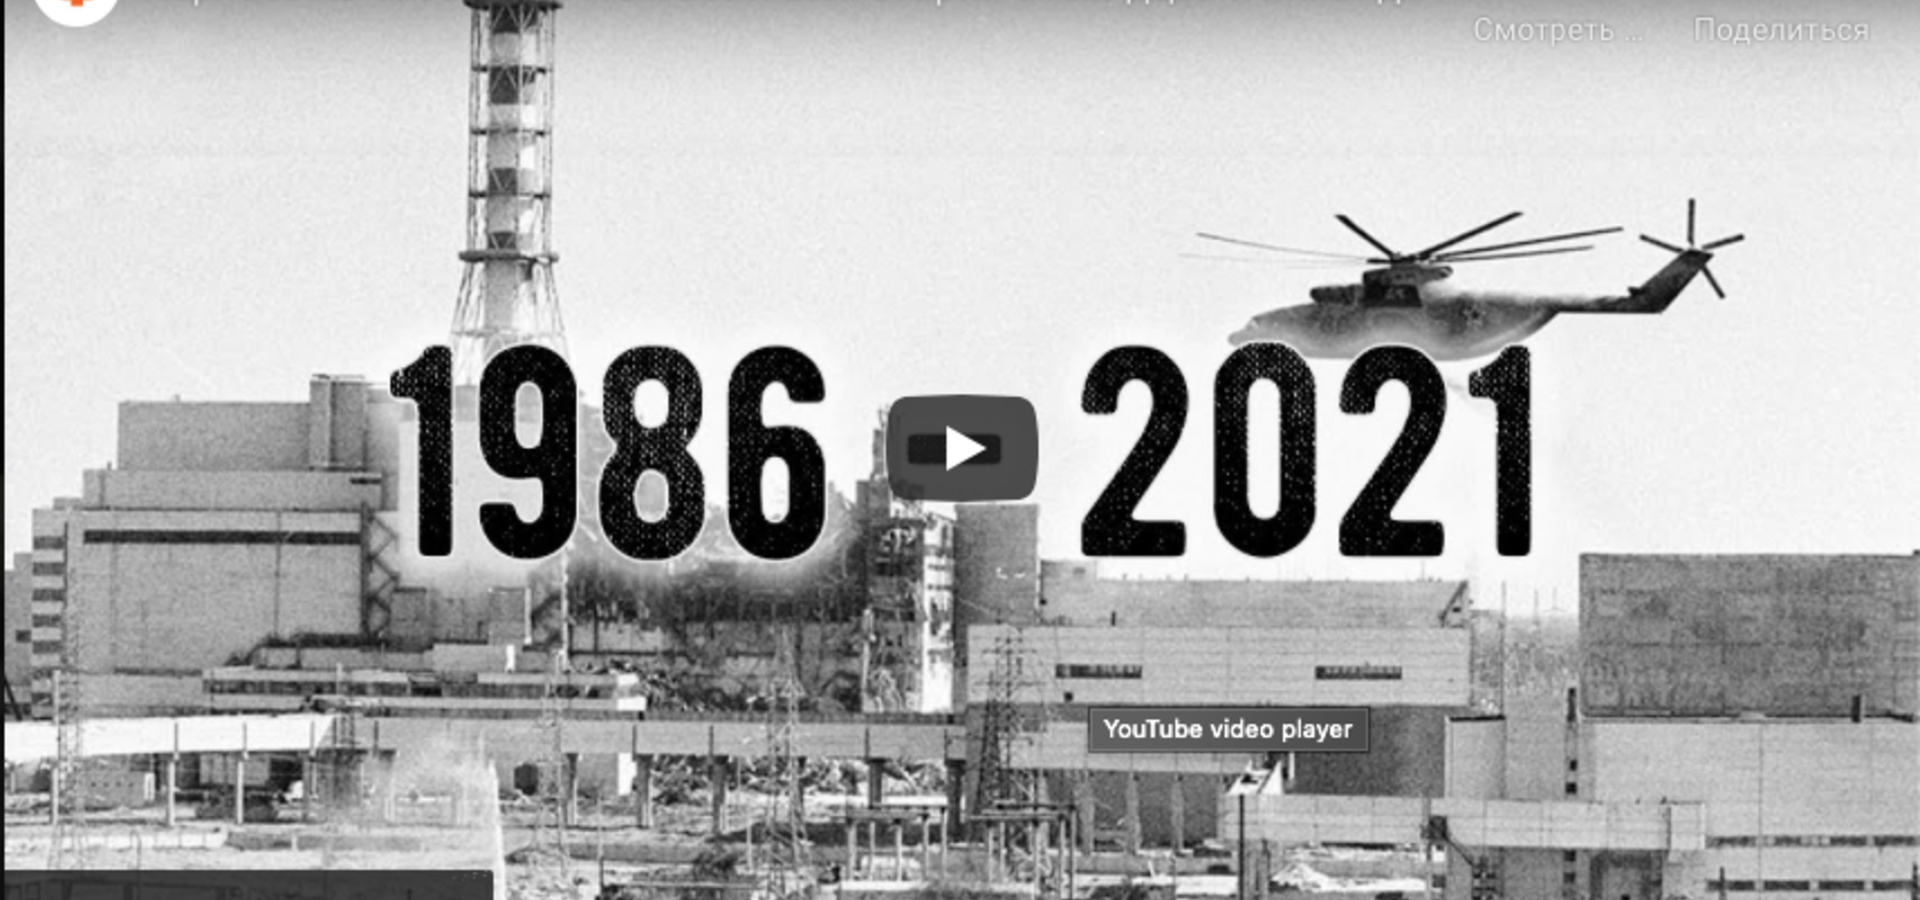 Чорнобиль 1986-2021. Невідомі історії очевидців і ліквідаторів аварії на  ЧАЕС